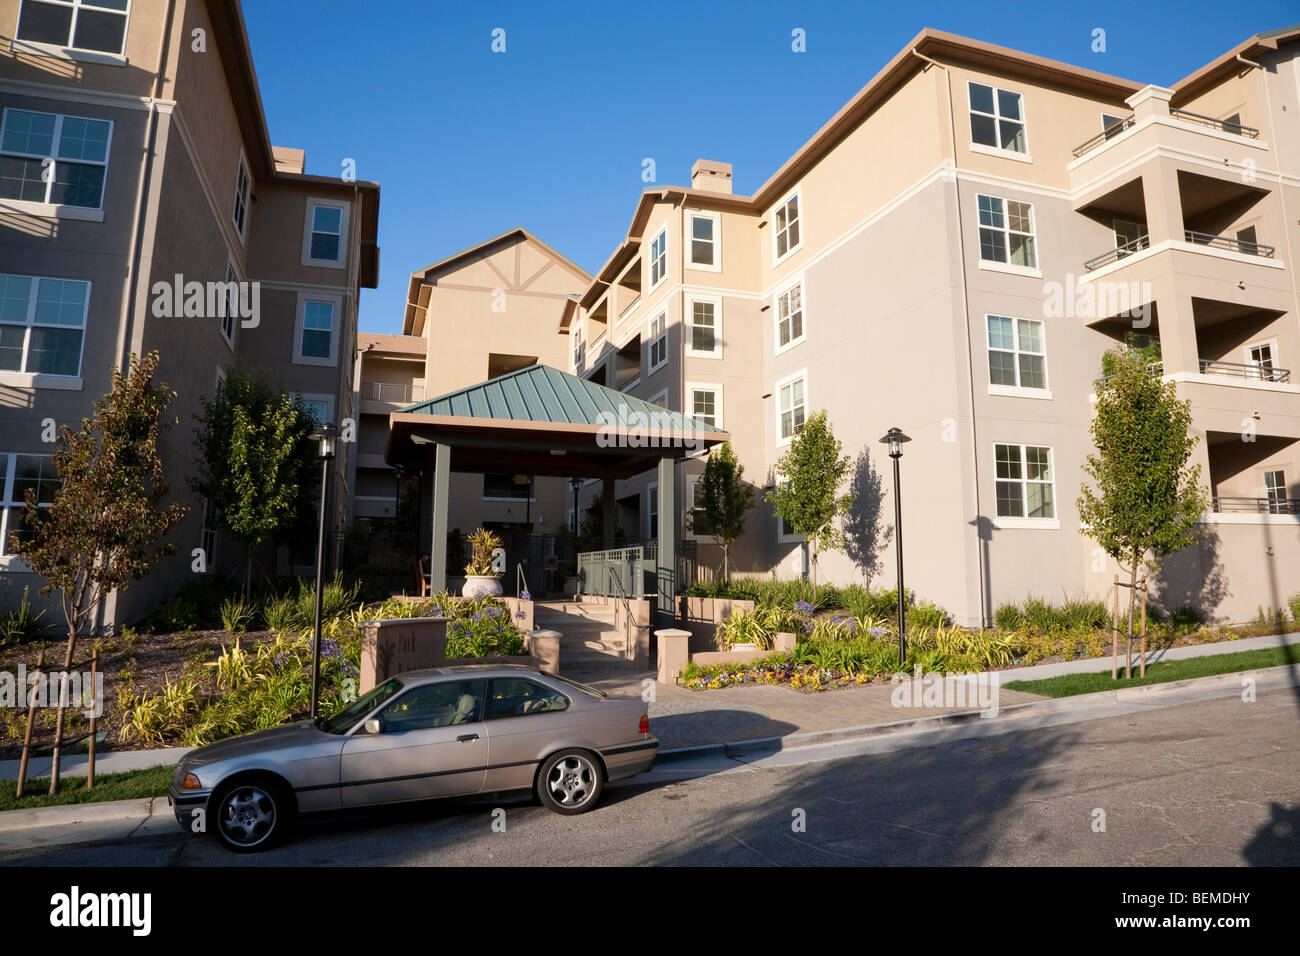 Desarrollo de la vivienda de uso mixto (multi uso). Condominios residenciales y de oficinas, espacios de venta minorista. Park Broadway, Millbrae, CA, EE.UU. Foto de stock